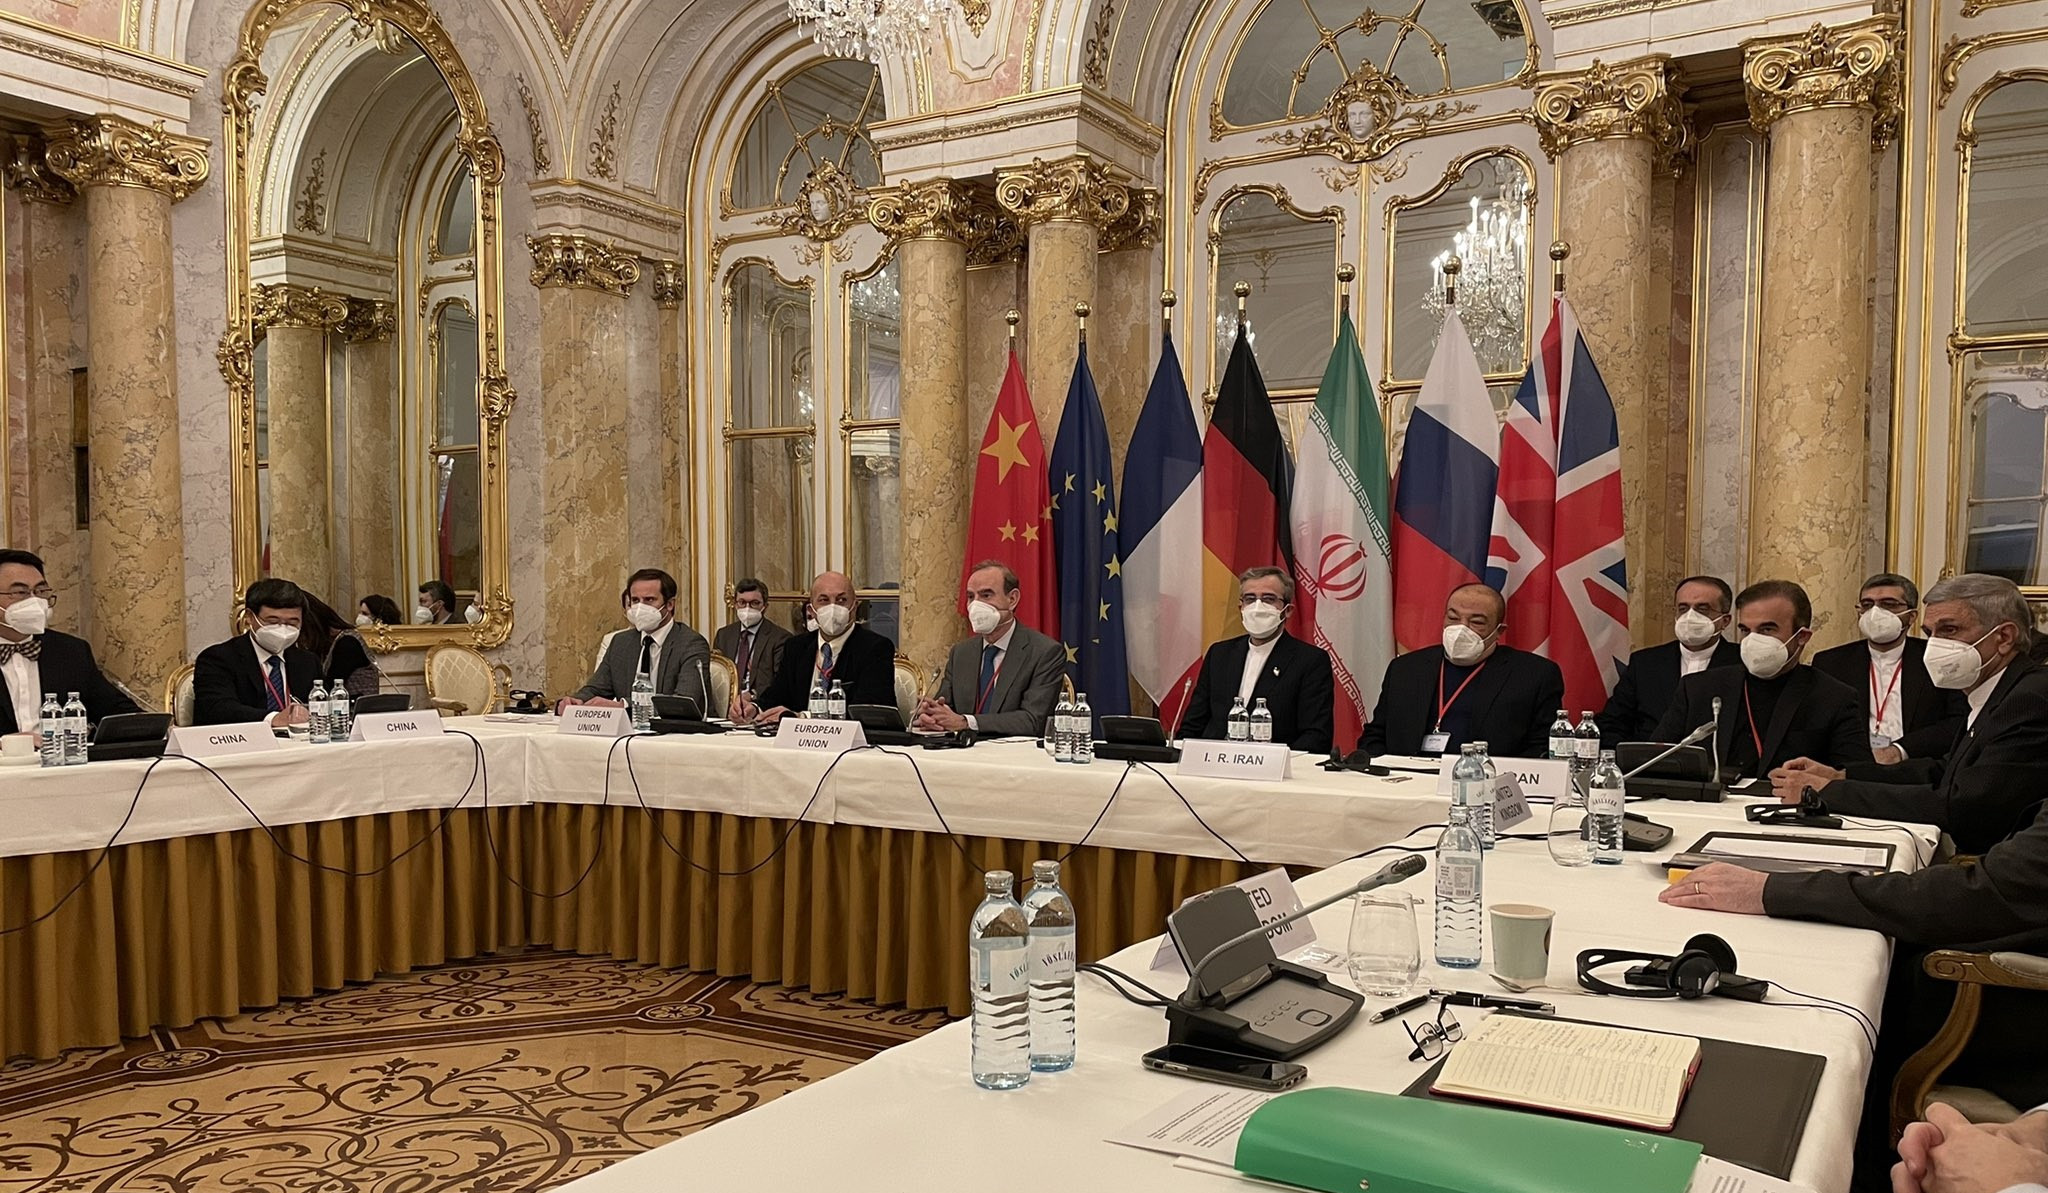 Վիեննայում վերսկսվել է Իրանի միջուկային գործարքի շուրջ բանակցությունների հերթական փուլը